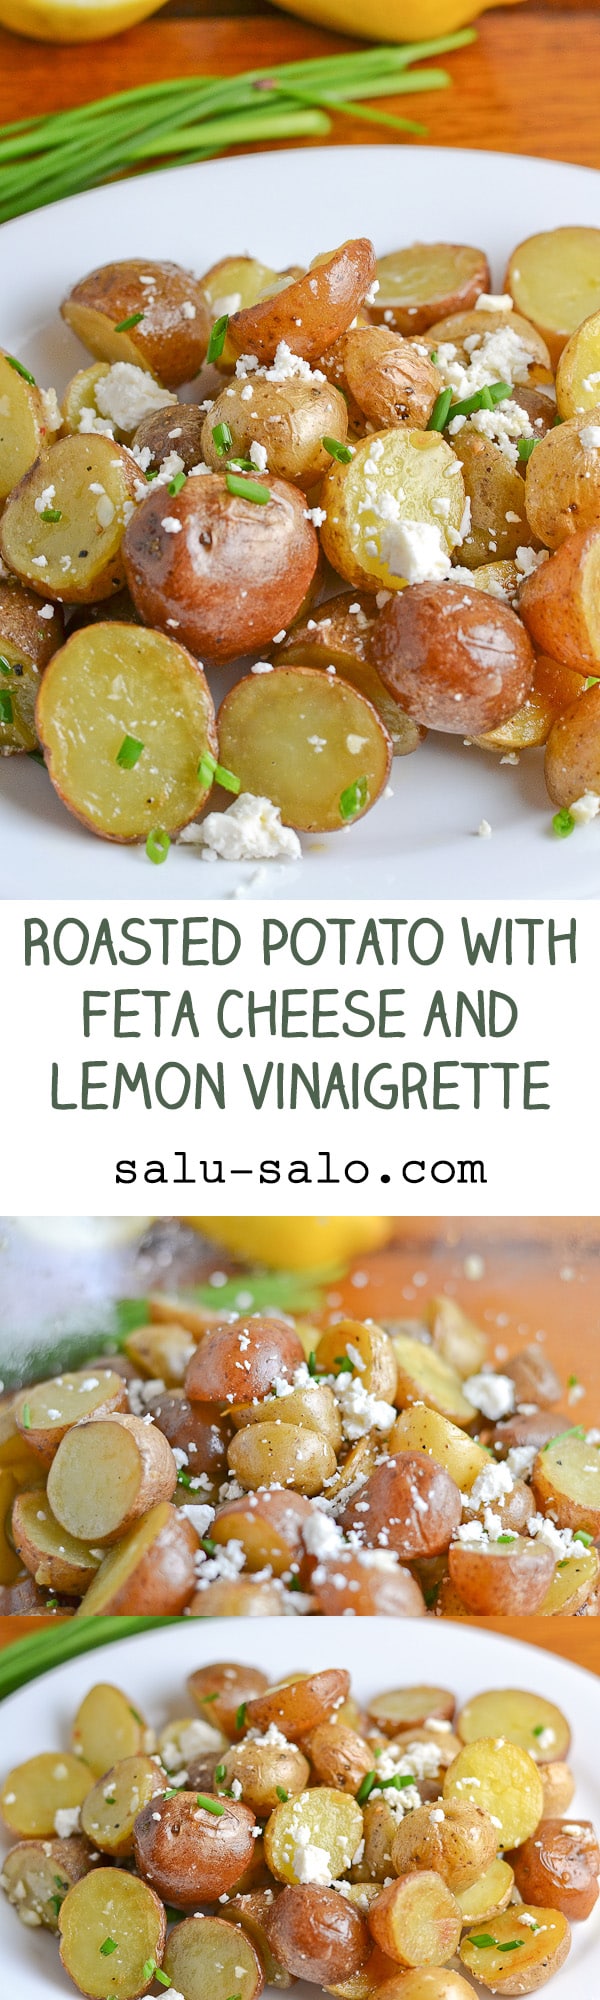 Roasted Potato with Feta Cheese and Lemon Vinaigrette